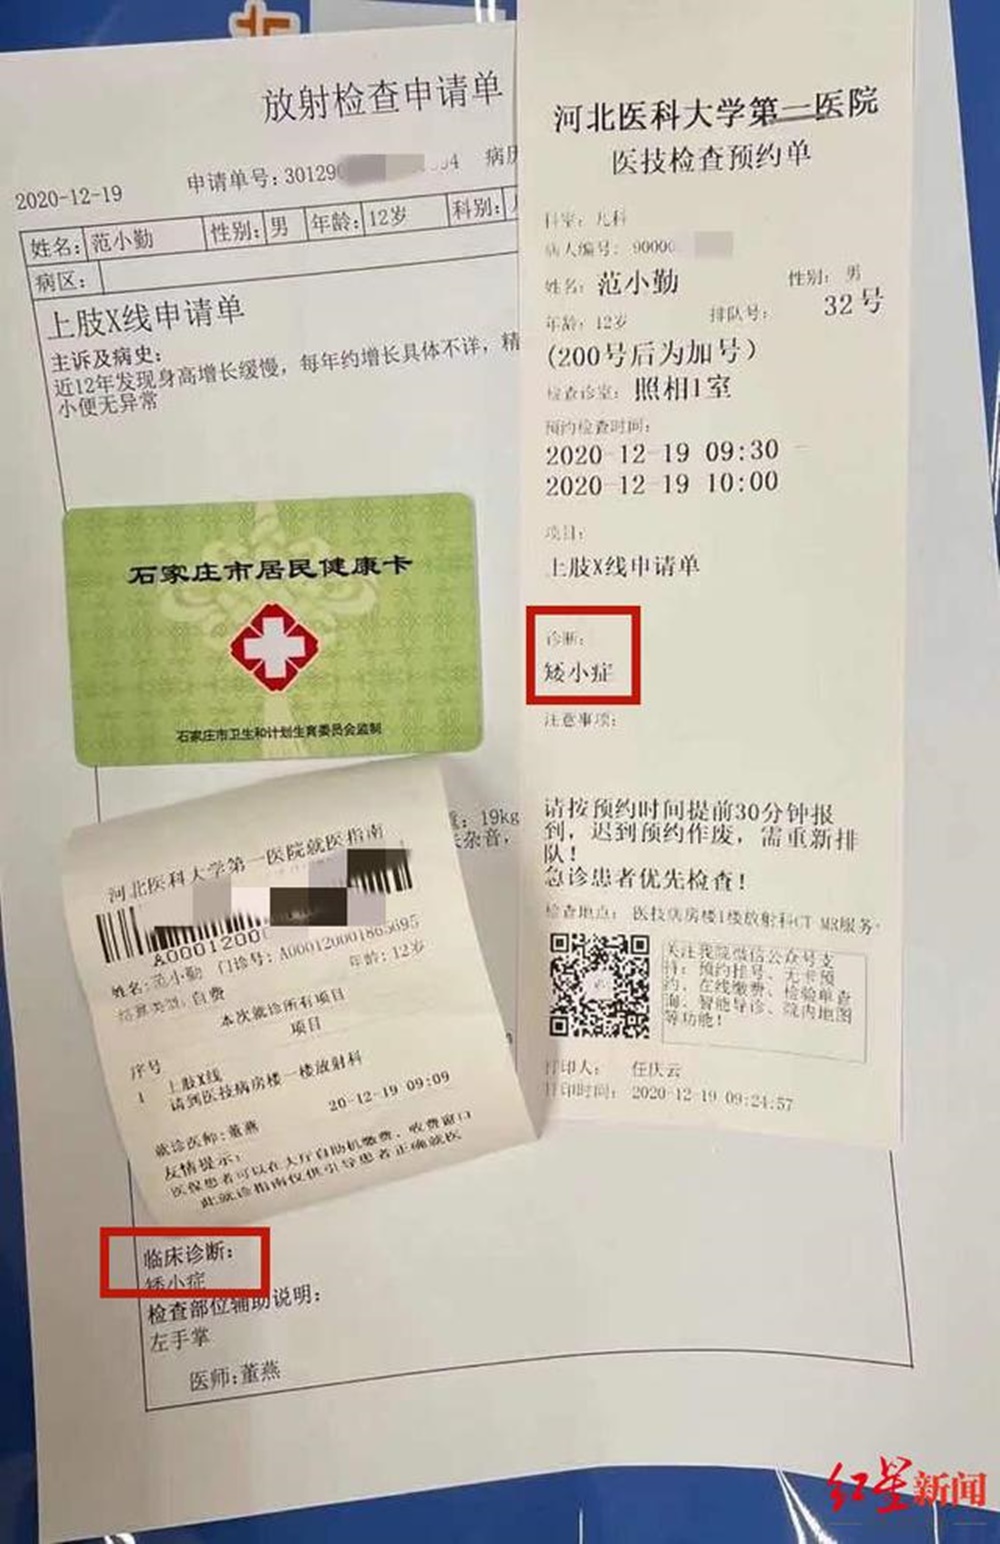 王雲輝提供診斷報告，顯示12歲范小勤被診斷出患有矮小症。網圖